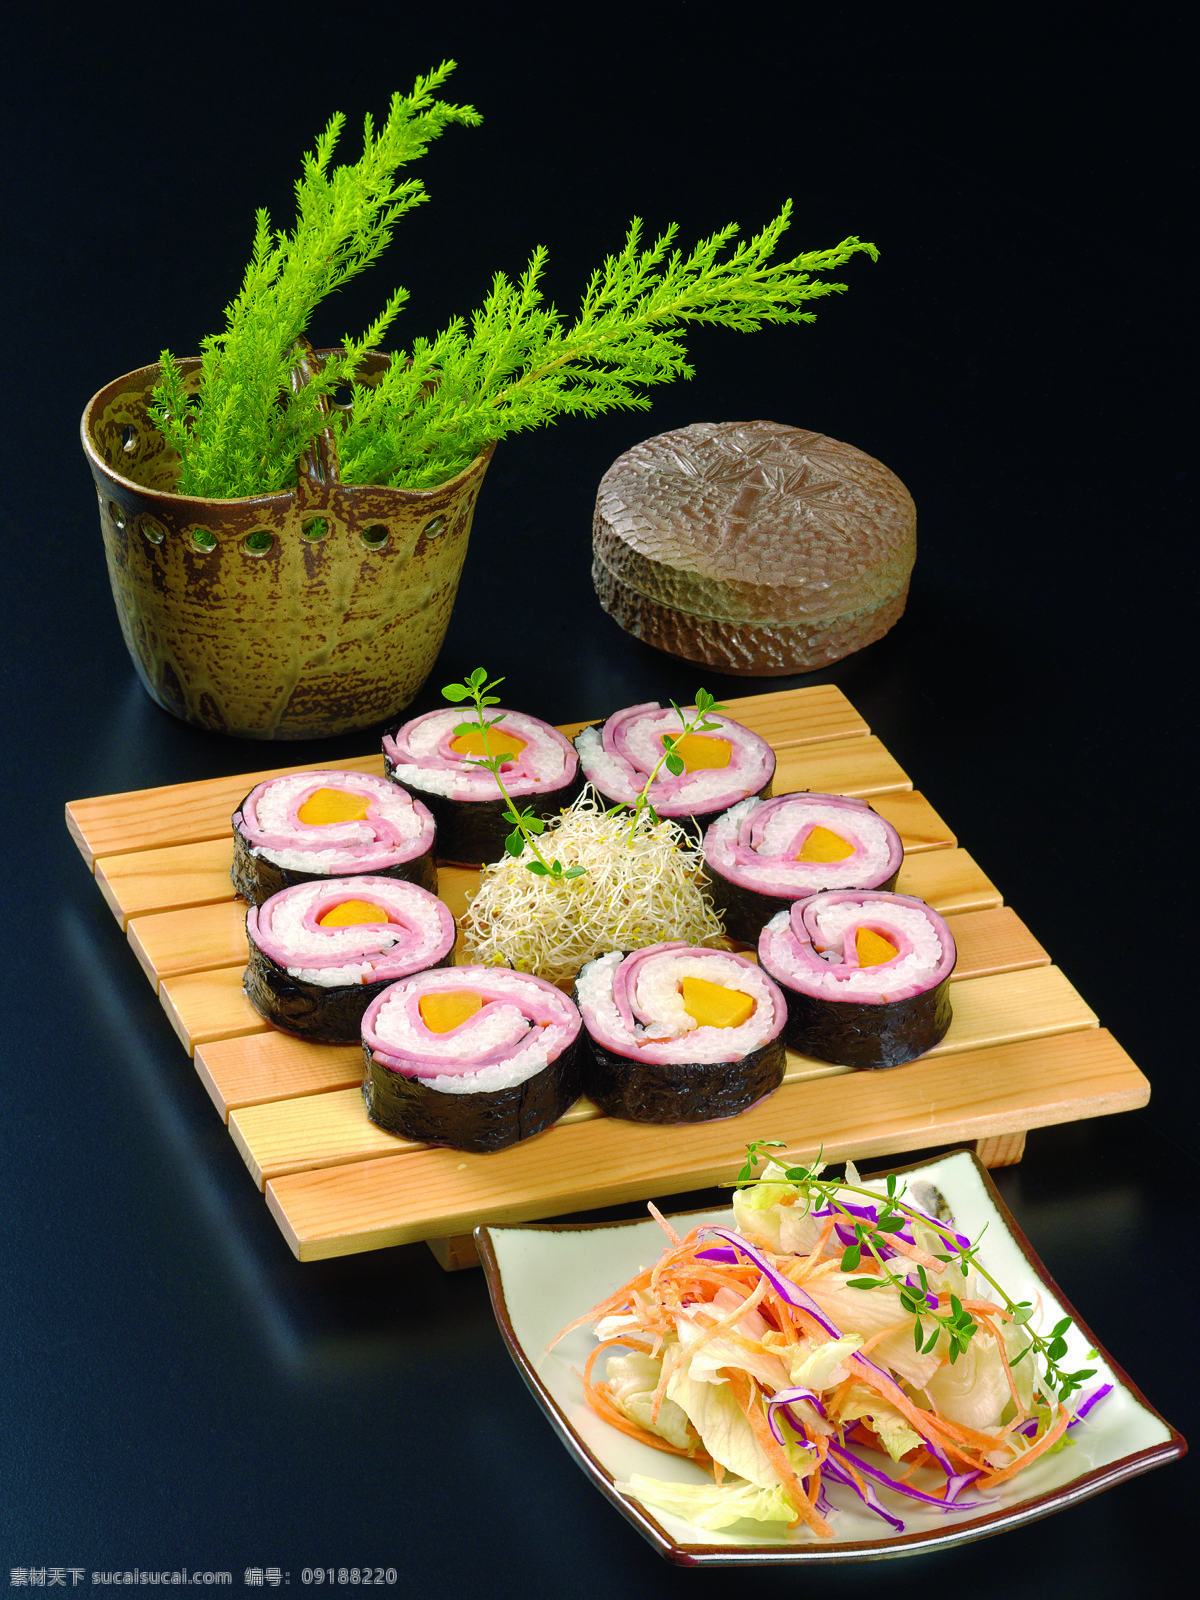 木板 上 寿司 紫菜包饭 韩式料理 传统美食 餐饮美食 美食摄影 美食图库 韩餐 美食 高档料理 西餐 主食 食品 菜色 西餐美食 卷物 外国美食